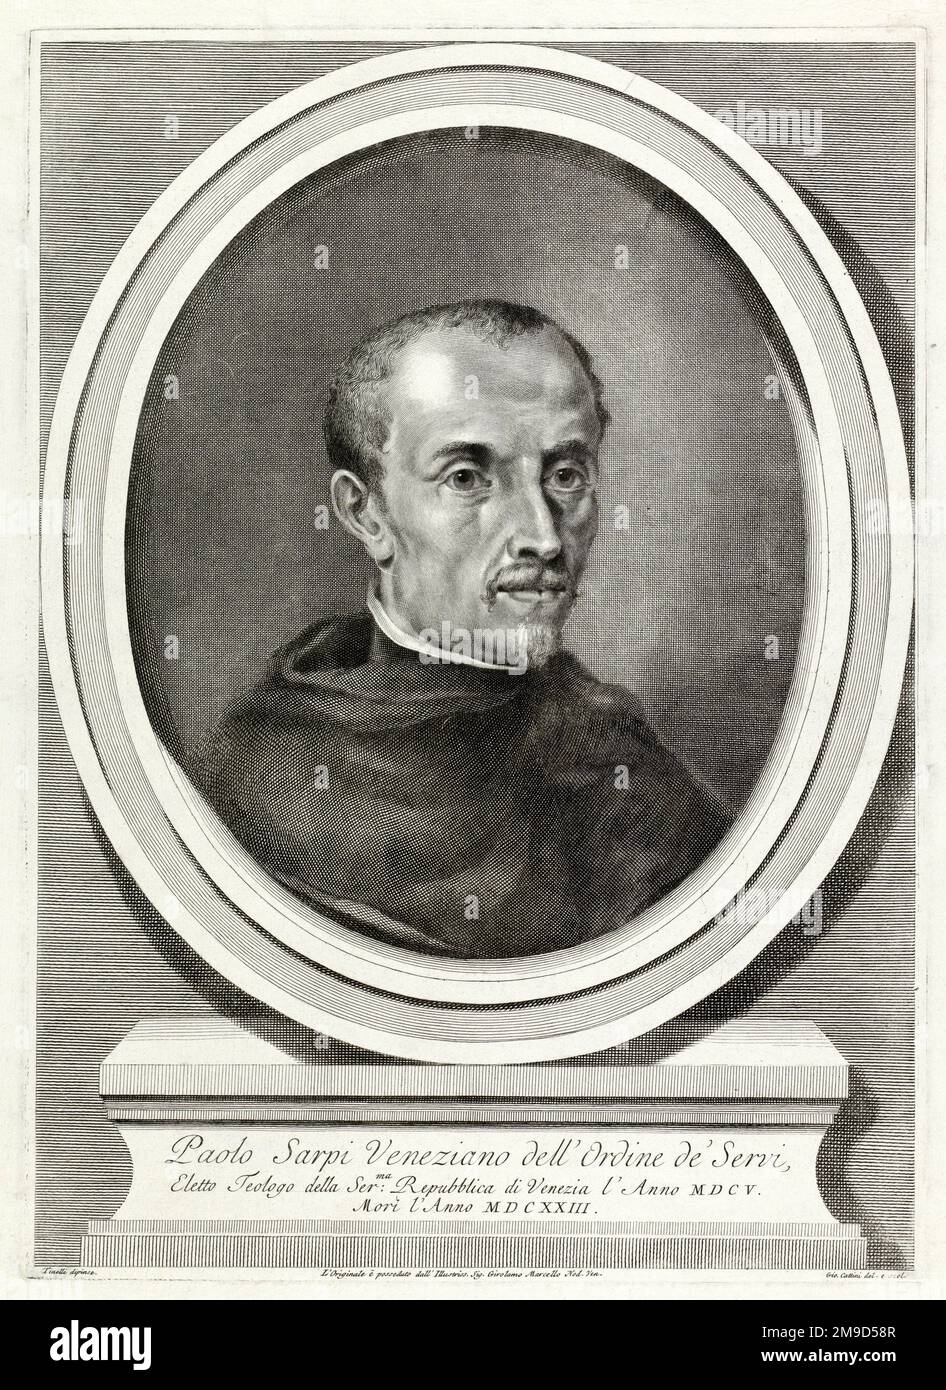 1600 ca, Venice , ITALY : The italian politician , historian and teologist Frà PAOLO SARPI ( 1552 - 1623 ). Portrait engraved by Giovanni Cattini from the original work by painter Tinelli ( XVIII century ). - HISTORY - FOTO STORICHE - POLITICO - POLITICA - POLITIC - TEOLOGO - TEOLOGIA - THEOLOGY - THEOLOGIAN - STORICO - STORICISTA - foto storiche - foto storica - portrait - religioso - RELIGIONE - Frate - CATTOLICA - CATHOLIC RELIGION - prelato - prete - priest - portrait - ritratto - illustrazione - incisione  - engraving - Roman Catholic Church  --- Archivio GBB Stock Photo